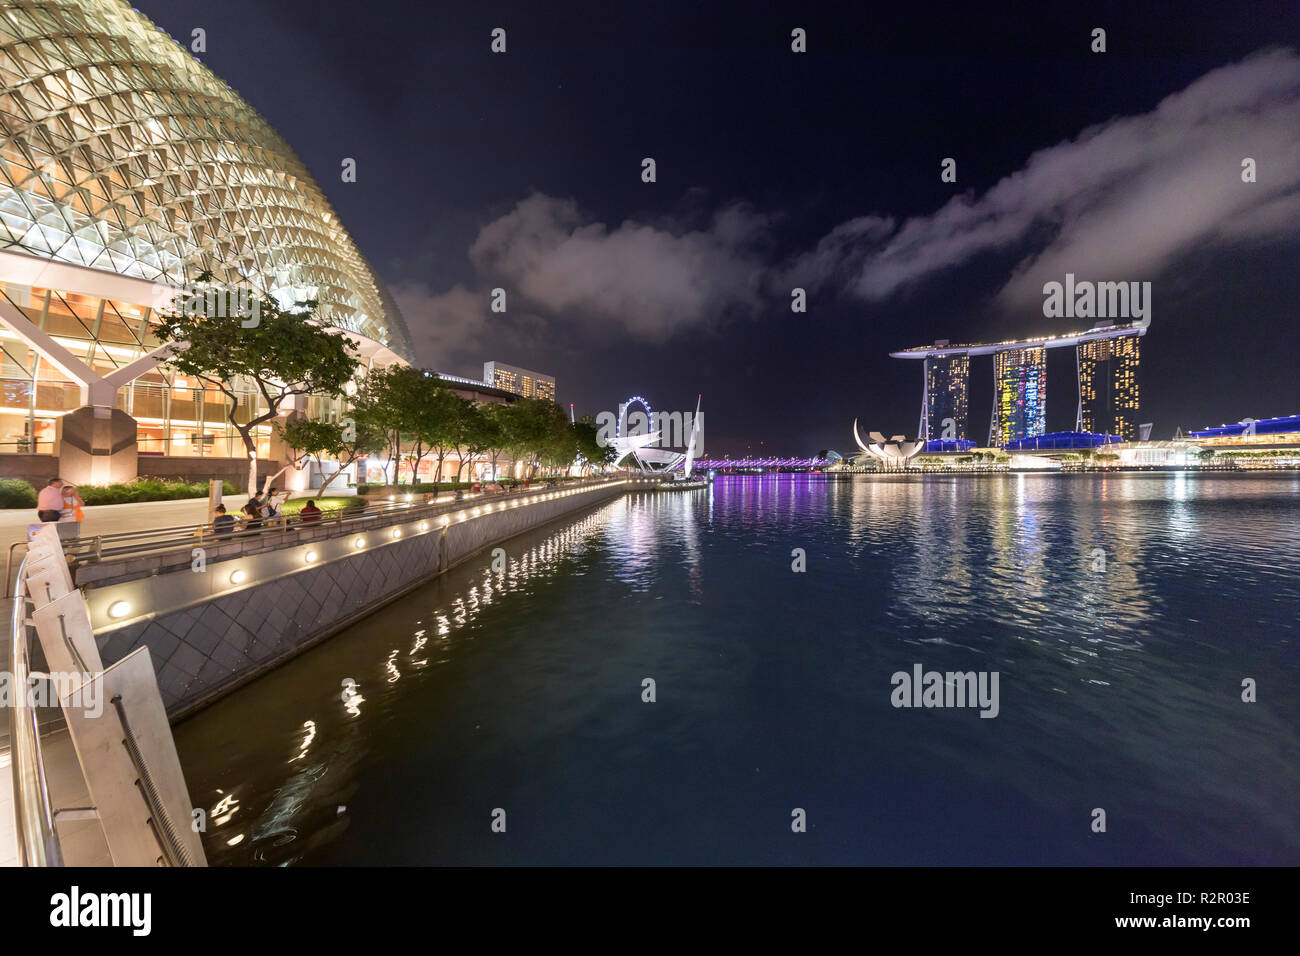 Singapore, Panorama, il fiume Singapore, alla passeggiata lungomare e l'Esplanade, i teatri sulla baia, Singapore Flyer, Helix Bridge e Marina Bay Sands Foto Stock